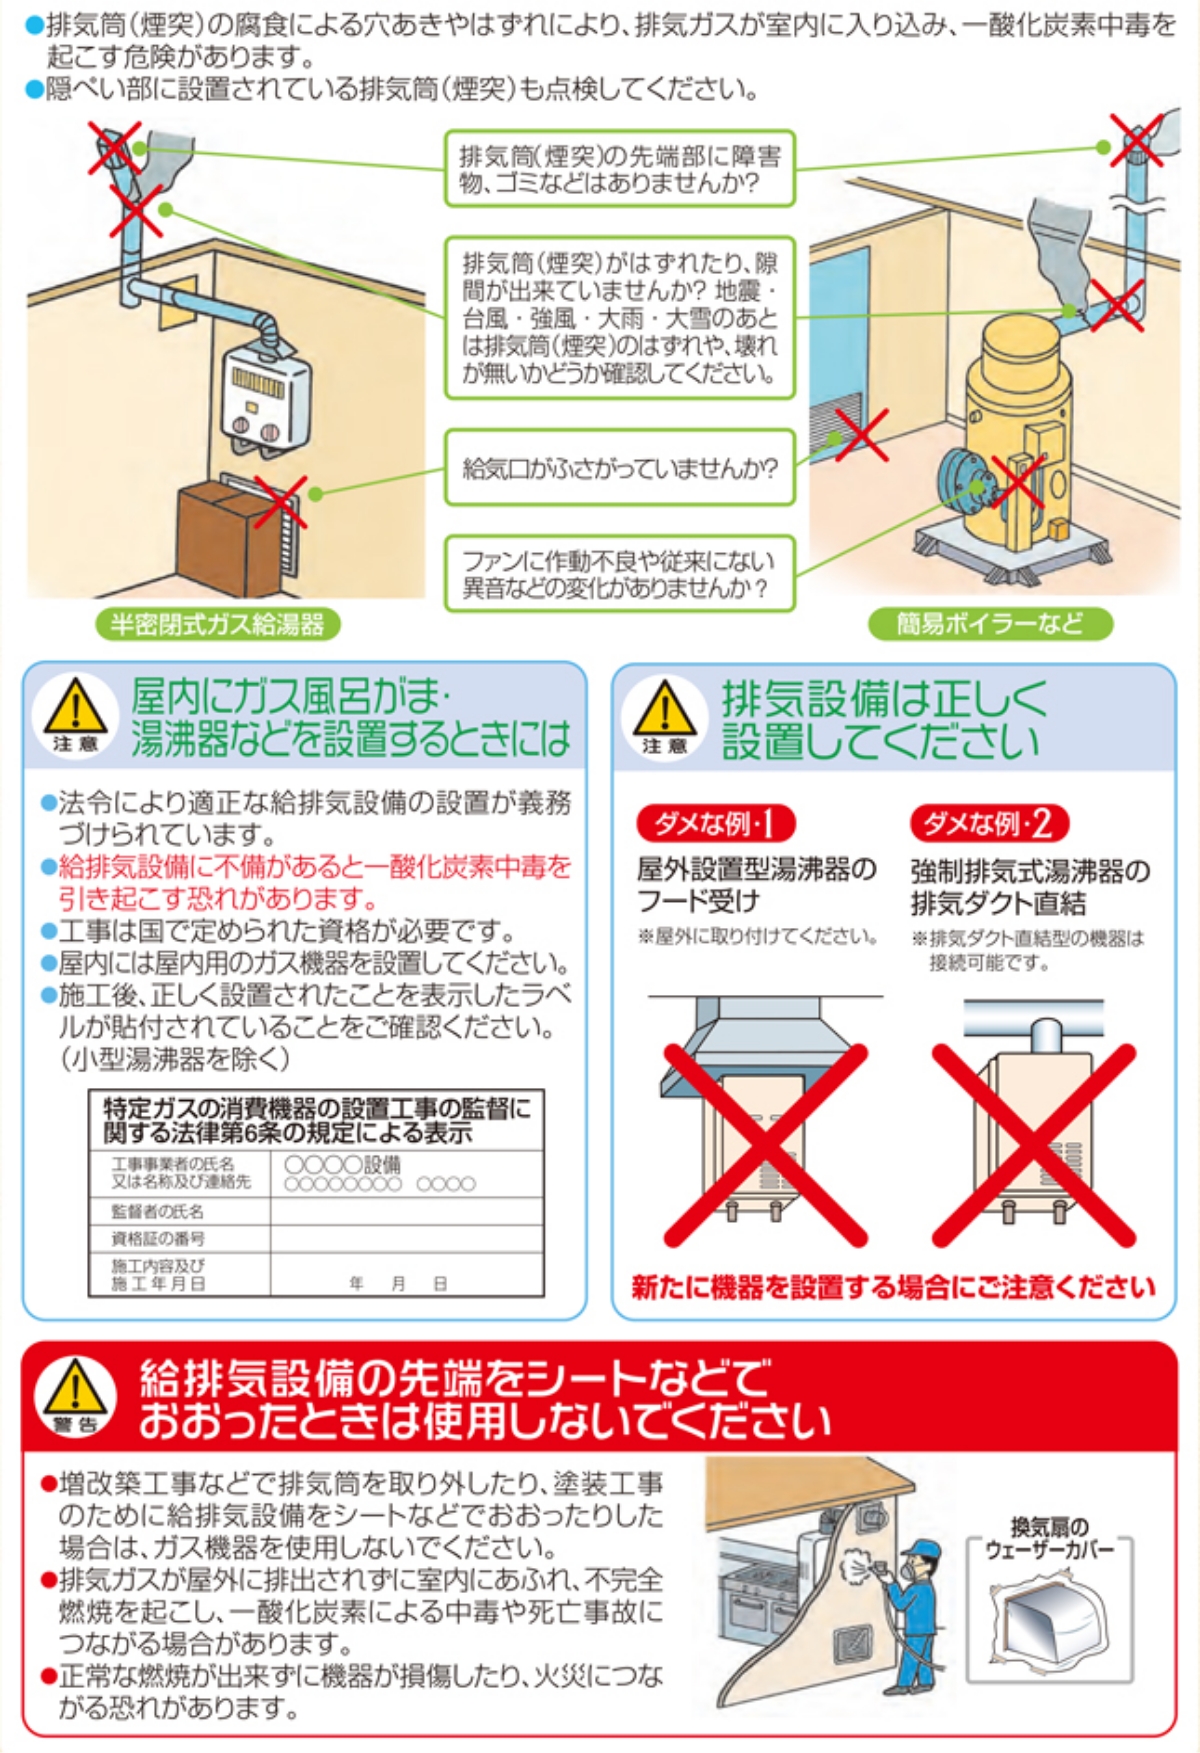 ●排気筒(煙突)の腐食による穴あきやはずれにより、排気ガスが室内に入り込み、一酸化炭素中毒を起こす危険があります。
●隠べい部に設置されている排気筒(煙突)も点検してください。
排気筒(煙突)の先端部に障害物、ゴミなどはありませんか?
排気筒(煙突)がはずれたり、隙間が出来ていませんか? 地震・台風・強風・大雨・大雪のあとは排気筒(煙突)のはずれや、壊れが無いかどうか確認してください。
給気口がふさがっていませんか?
ファンに作動不良や従来にない異音などの変化がありませんか?（簡易ボイラーなど）
屋内にガス風呂がま・注意湯沸器などを設置するときには
●法令により適正な給排気設備の設置が義務づけられています。
●給排気設備に不備があると一酸化炭素中毒を引き起こす恐れがあります。
●工事は国で定められた資格が必要です。
●屋内には屋内用のガス機器を設置してください。
●施工後、正しく設置されたことを表示したラベルが貼付されていることをご確認ください。(小型湯沸器を除く)
▲排気設備は正しく設置してください
ダメな例１
※屋外設置型湯沸し器のフード受け※屋外に取り付けてください。
ダメな例２
強制排気式湯沸し器の排気ダクト直結
※排気ダクト直結型の機器は接続可能です。
新たに機器を設置する場合にご注意ください
[ラベル内容]
特定ガスの消費機器の設置工事の監督に
関する法律第6条の規定による表示
工事事業者の氏名
又は名称及び連絡先
監督者の氏名:
資格証の番号
施工内容及び
施工年月日
年月日
▲警告 給排気設備の先端をシートなどでおおったときは使用しないでください
●増改築工事などで排気筒を取り外したり、塗装工事のために給排気設備をシートなどでおおったりした場合は、ガス機器を使用しないでください。
●排気ガスが屋外に排出されずに室内にあふれ、不完全燃焼を起こし、一酸化炭素による中毒や死亡事故につながる場合があります。
●正常な燃焼が出来ずに機器が損傷したり、火災につながる恐れがあります。